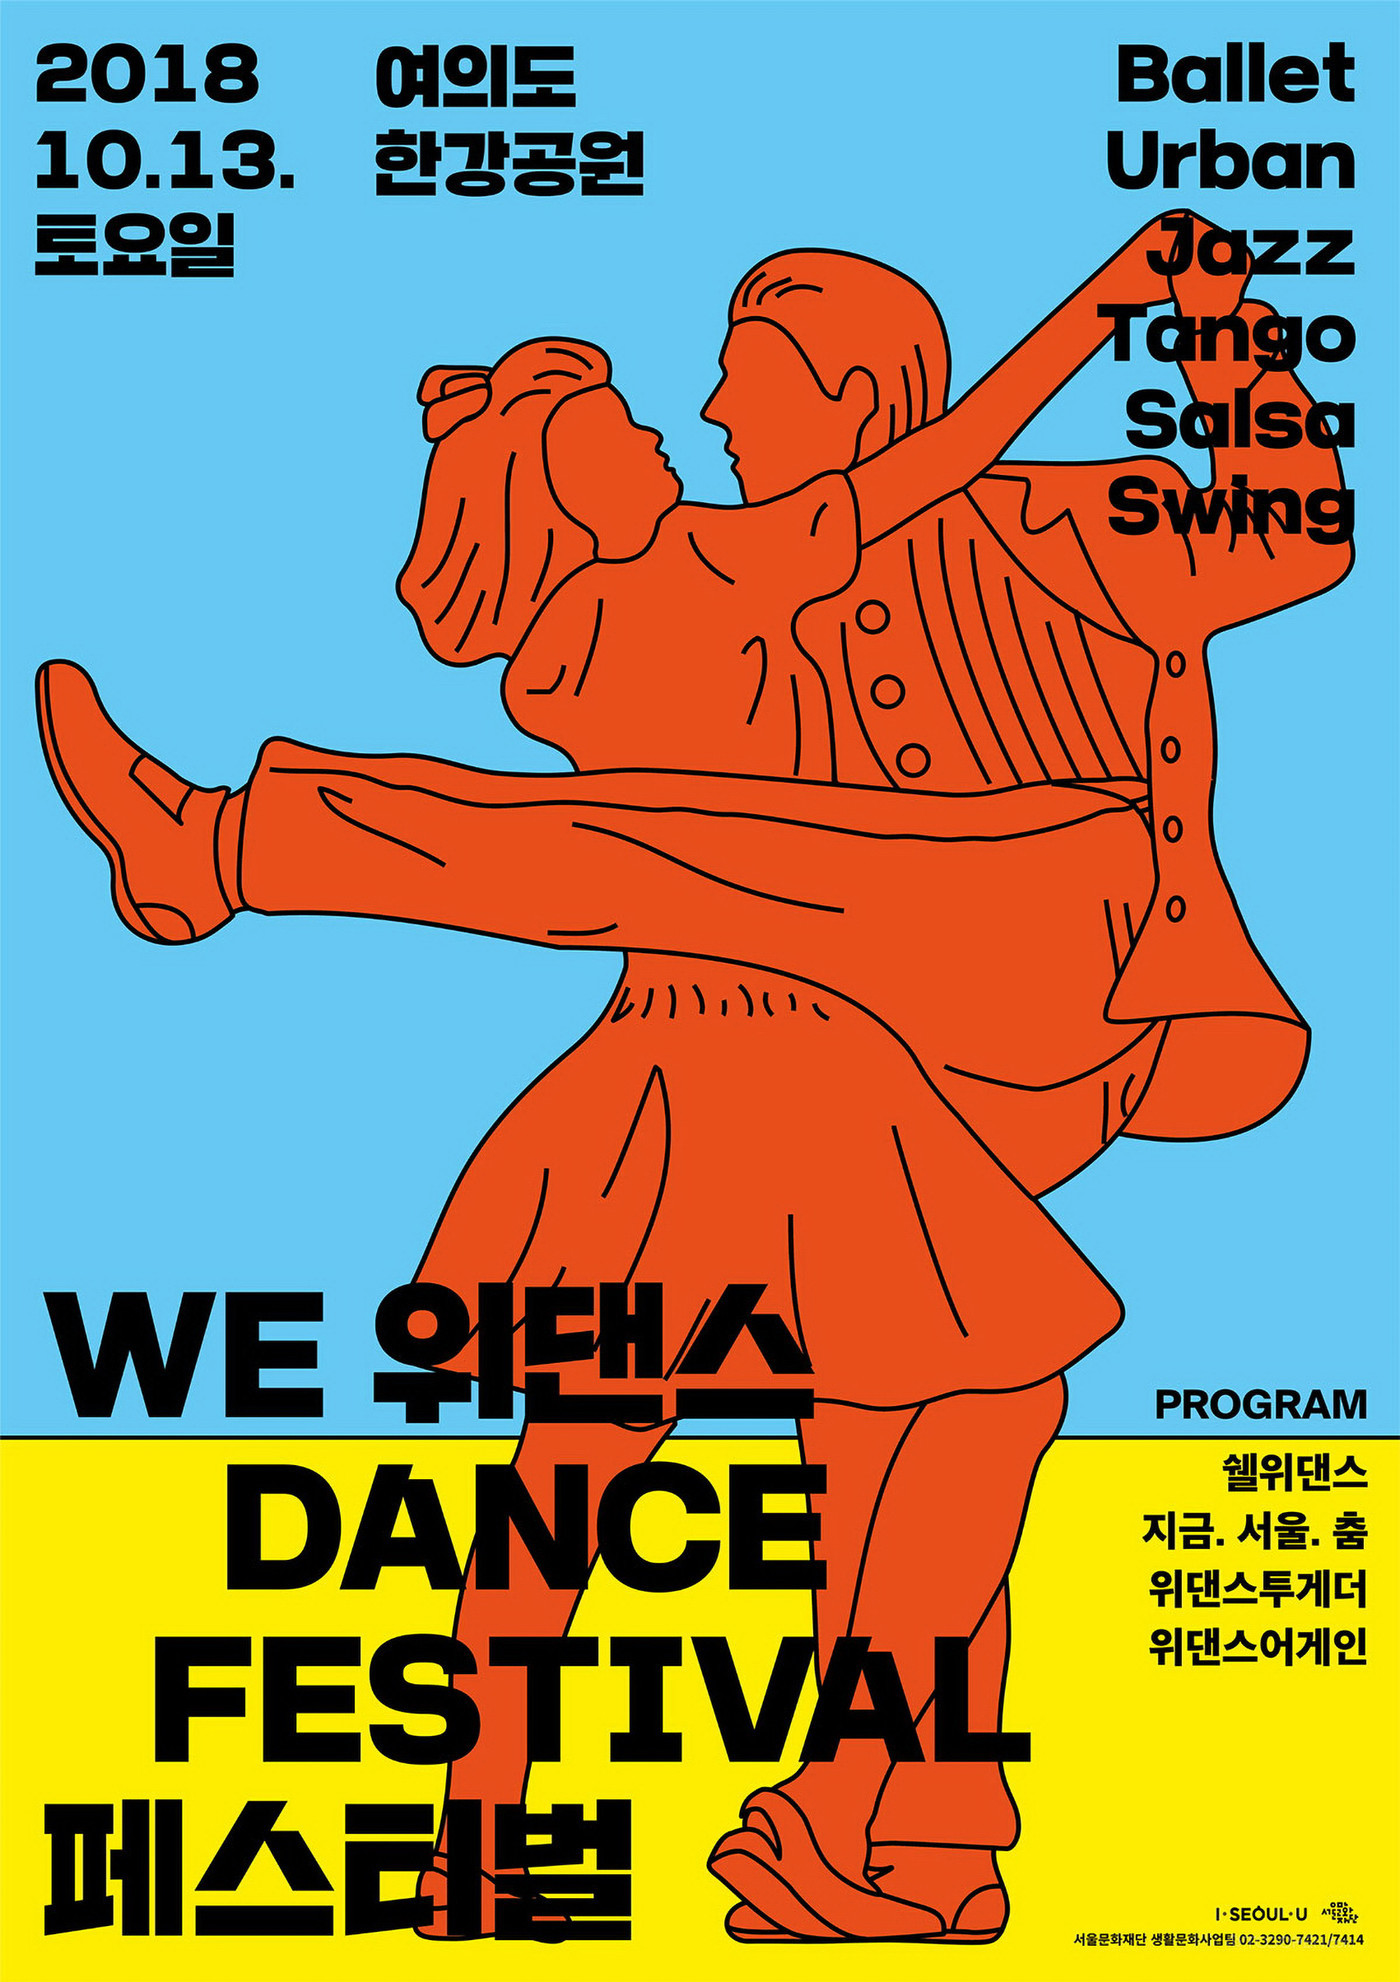 国外简笔线条舞蹈人物插画海报设计欣赏-01